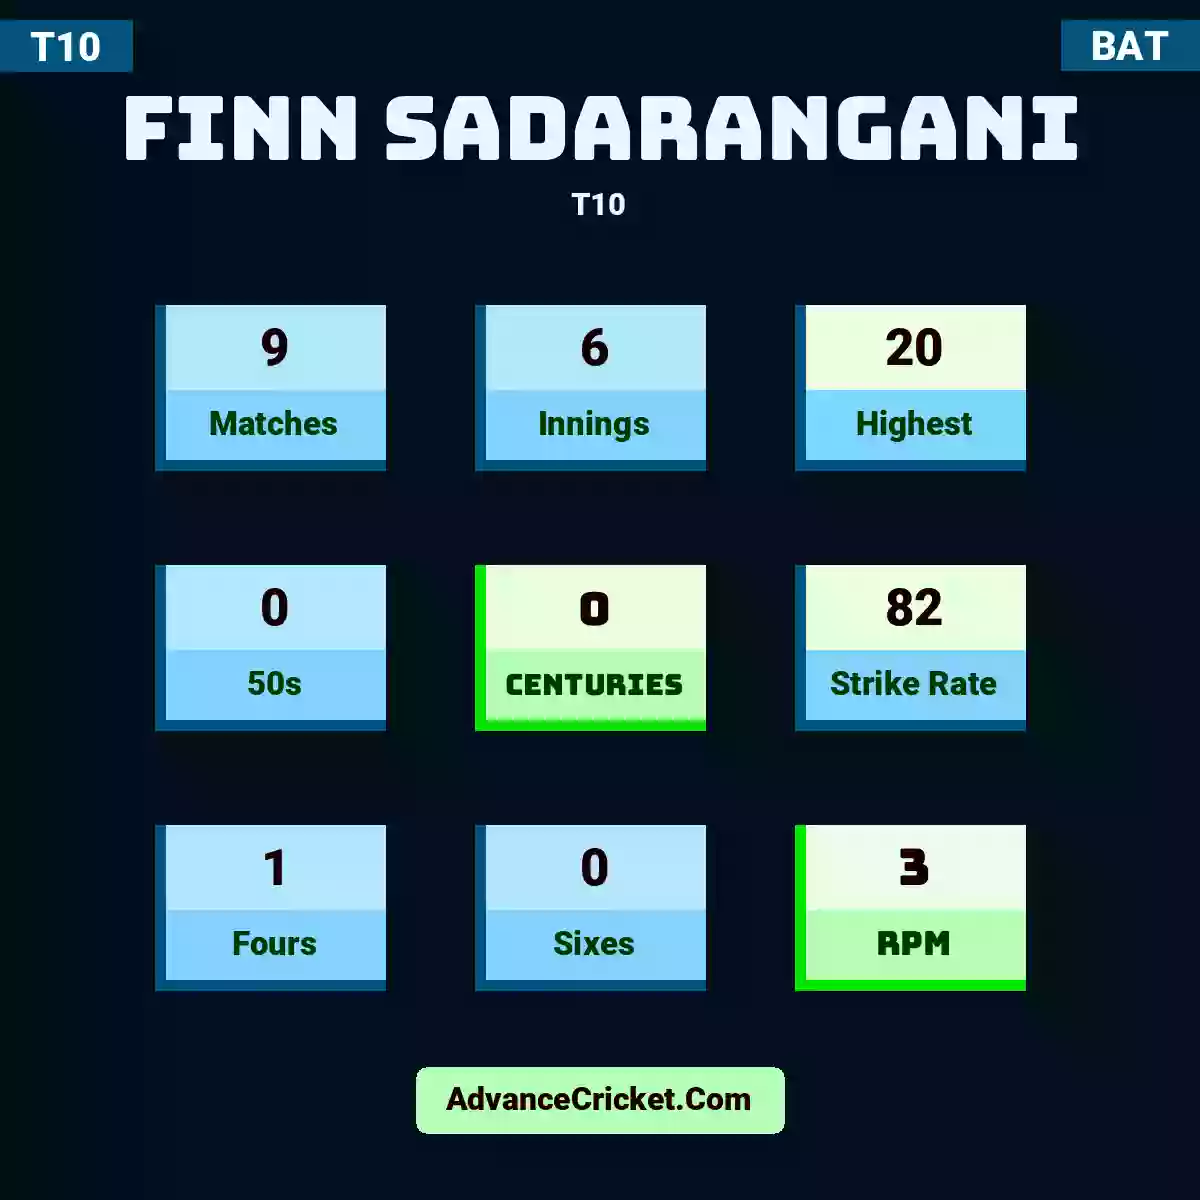 Finn Sadarangani T10 , Finn Sadarangani played 9 matches, scored 20 runs as highest, 0 half-centuries, and 0 centuries, with a strike rate of 82. F.Sadarangani hit 1 fours and 0 sixes, with an RPM of 3.